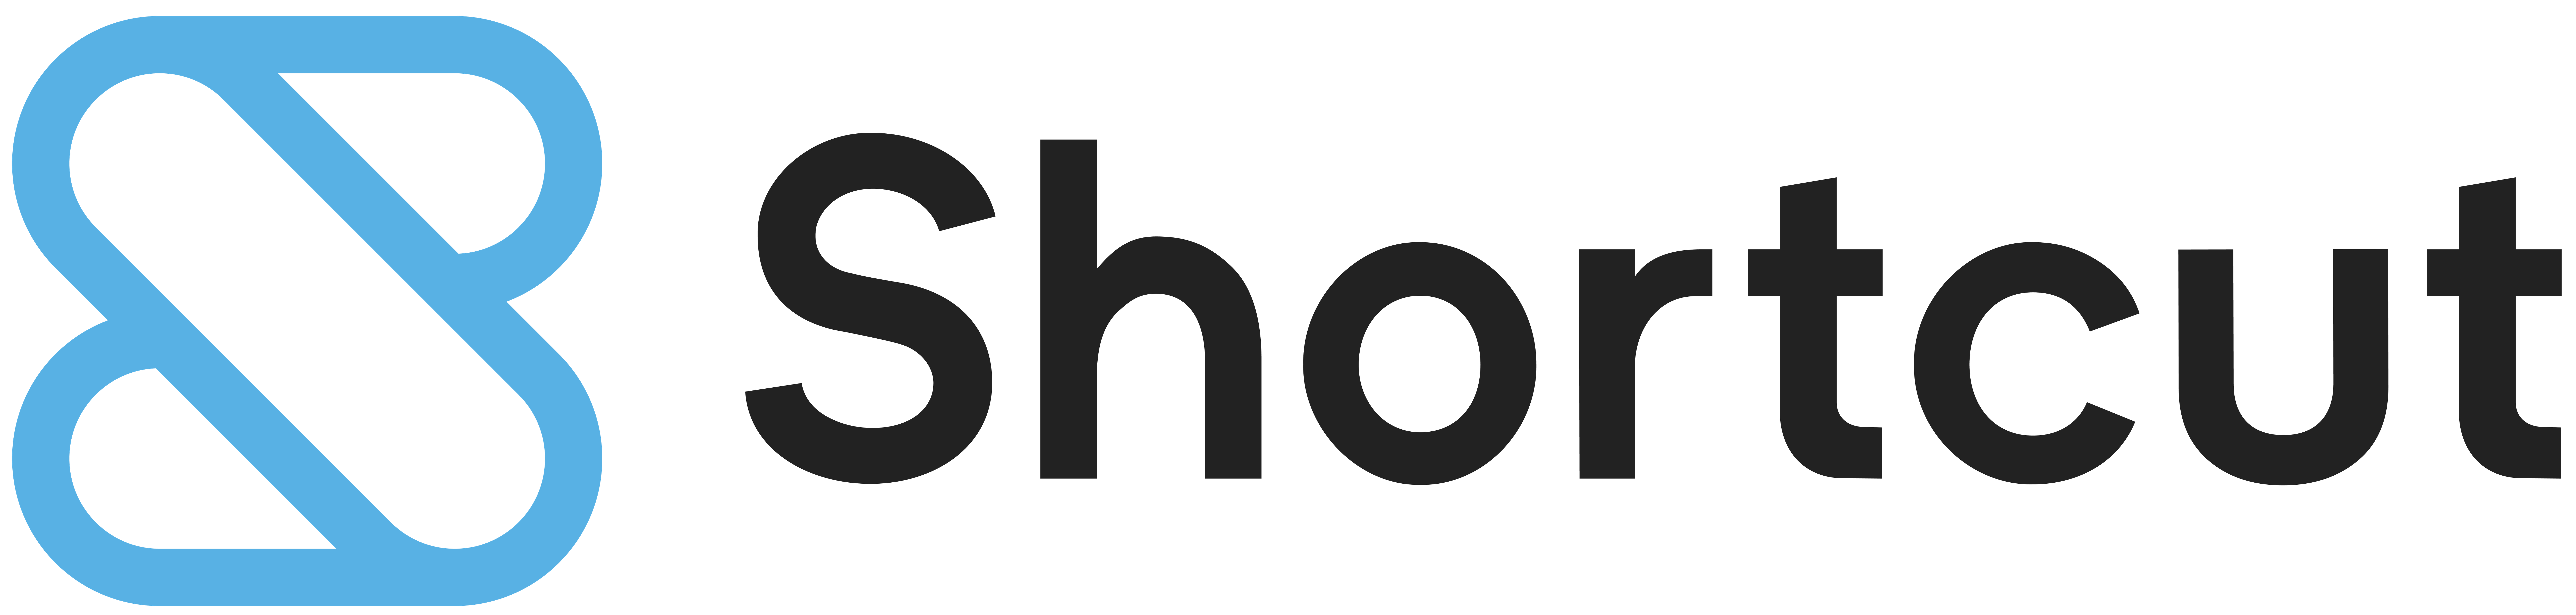 Shortcut Software Company